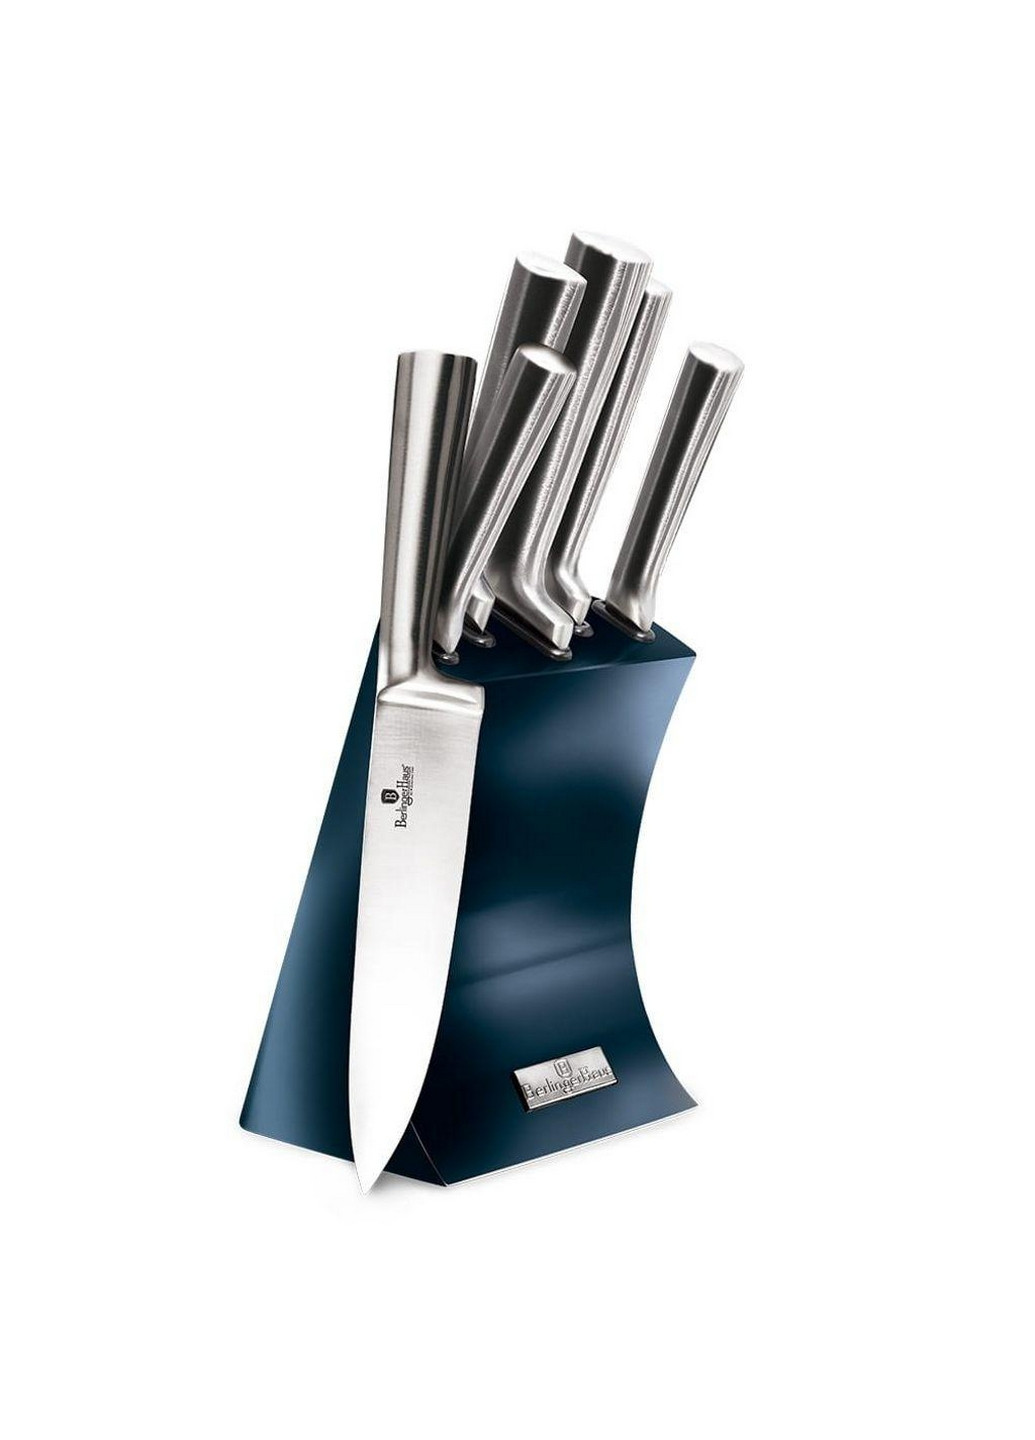 Набор ножей из 6 предметов Metallic Line Aquamarine Edition Berlinger Haus нержавеющая сталь,